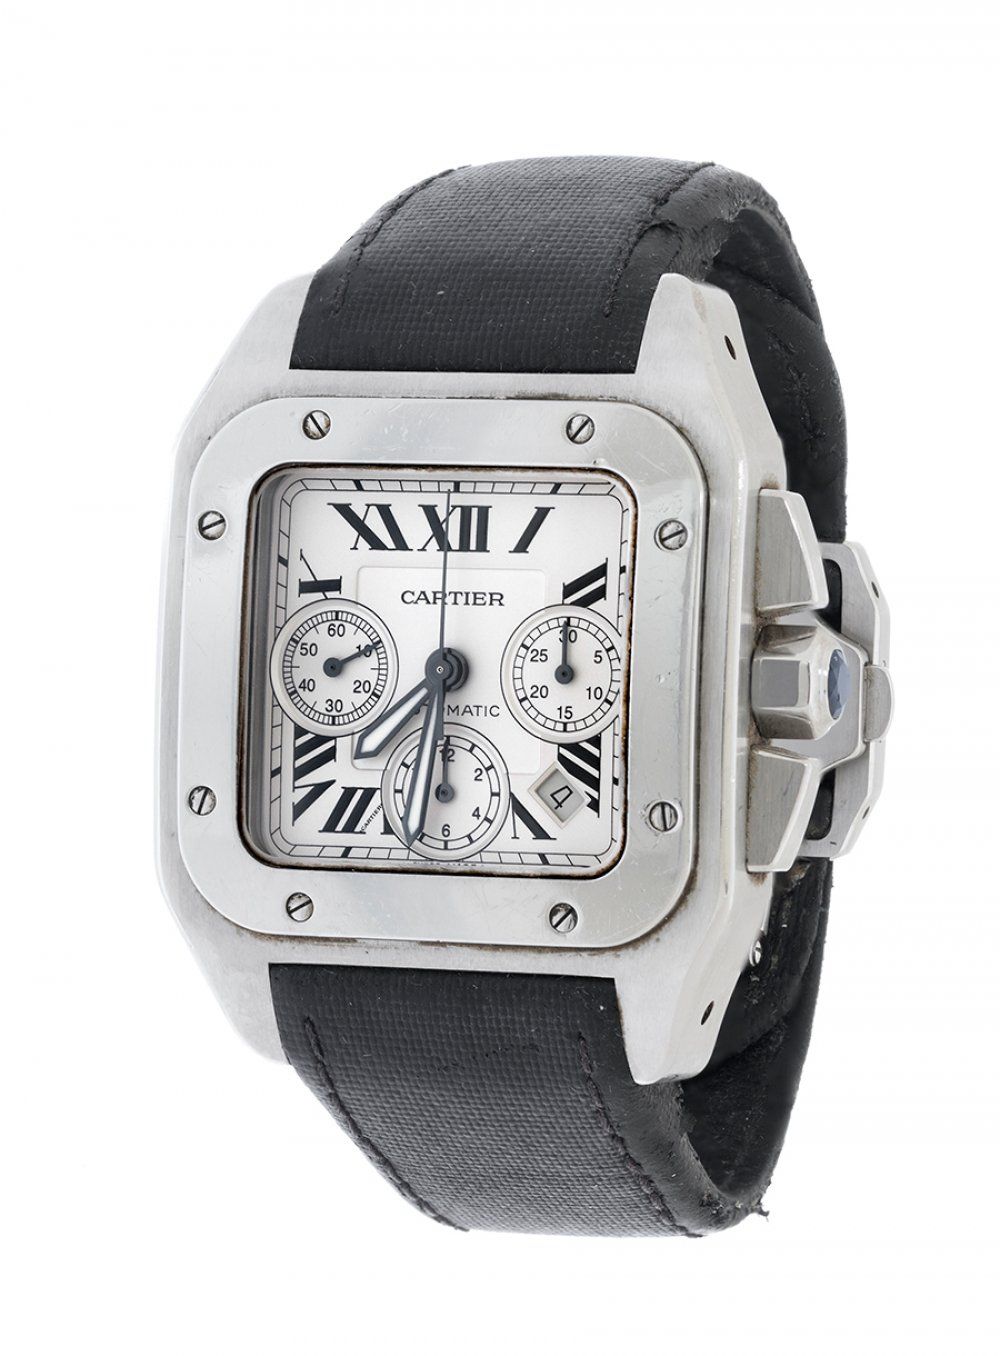 Null CARTIER Santos 100 XL Chrono Uhr, Mod. 2740, Ref. 842560XX, für Herren.
Geh&hellip;